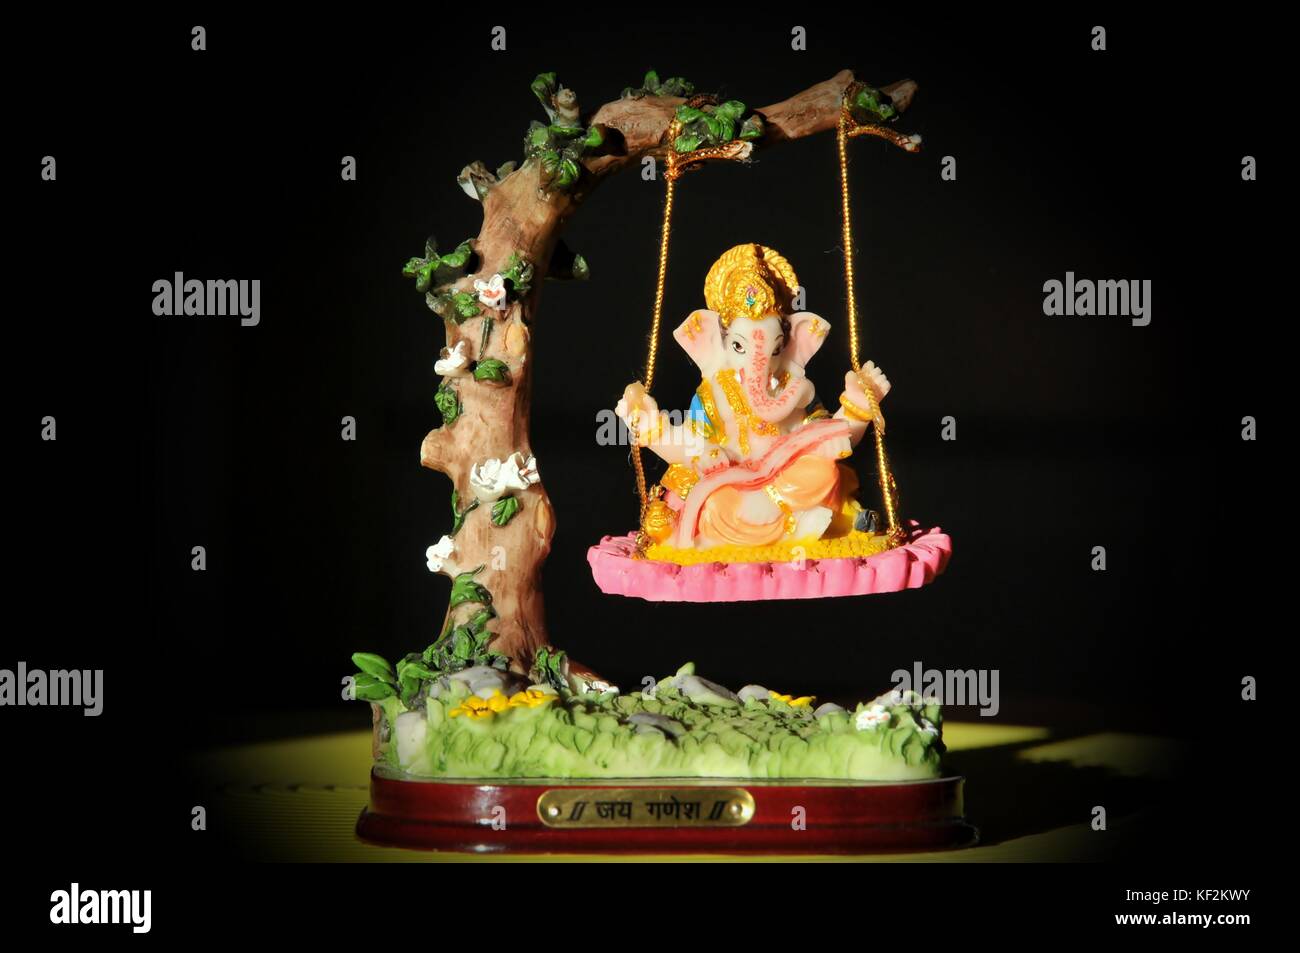 'Lord Ganesha' Bild des hinduistischen gottes auf einer Schaukel. Stockfoto